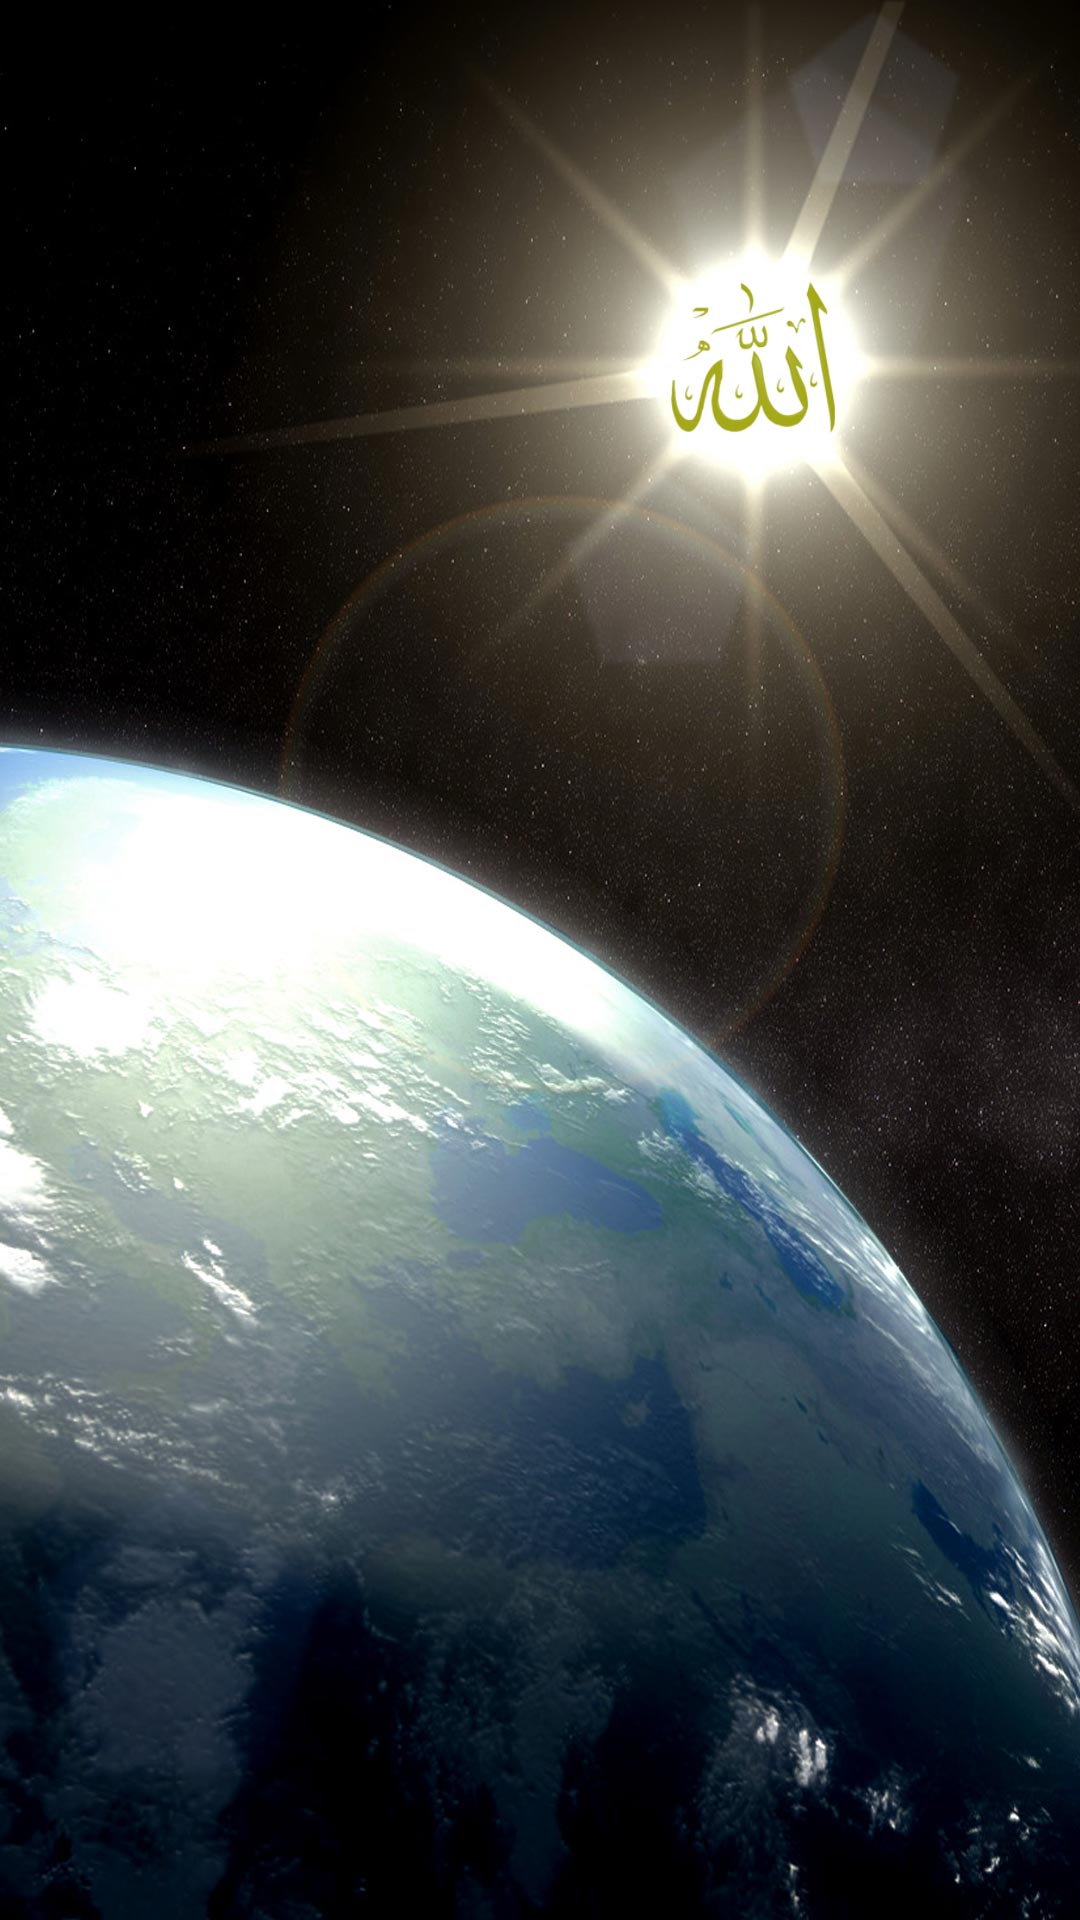 gambar untuk fondos de pantalla hp,atmósfera,espacio exterior,tierra,planeta,objeto astronómico